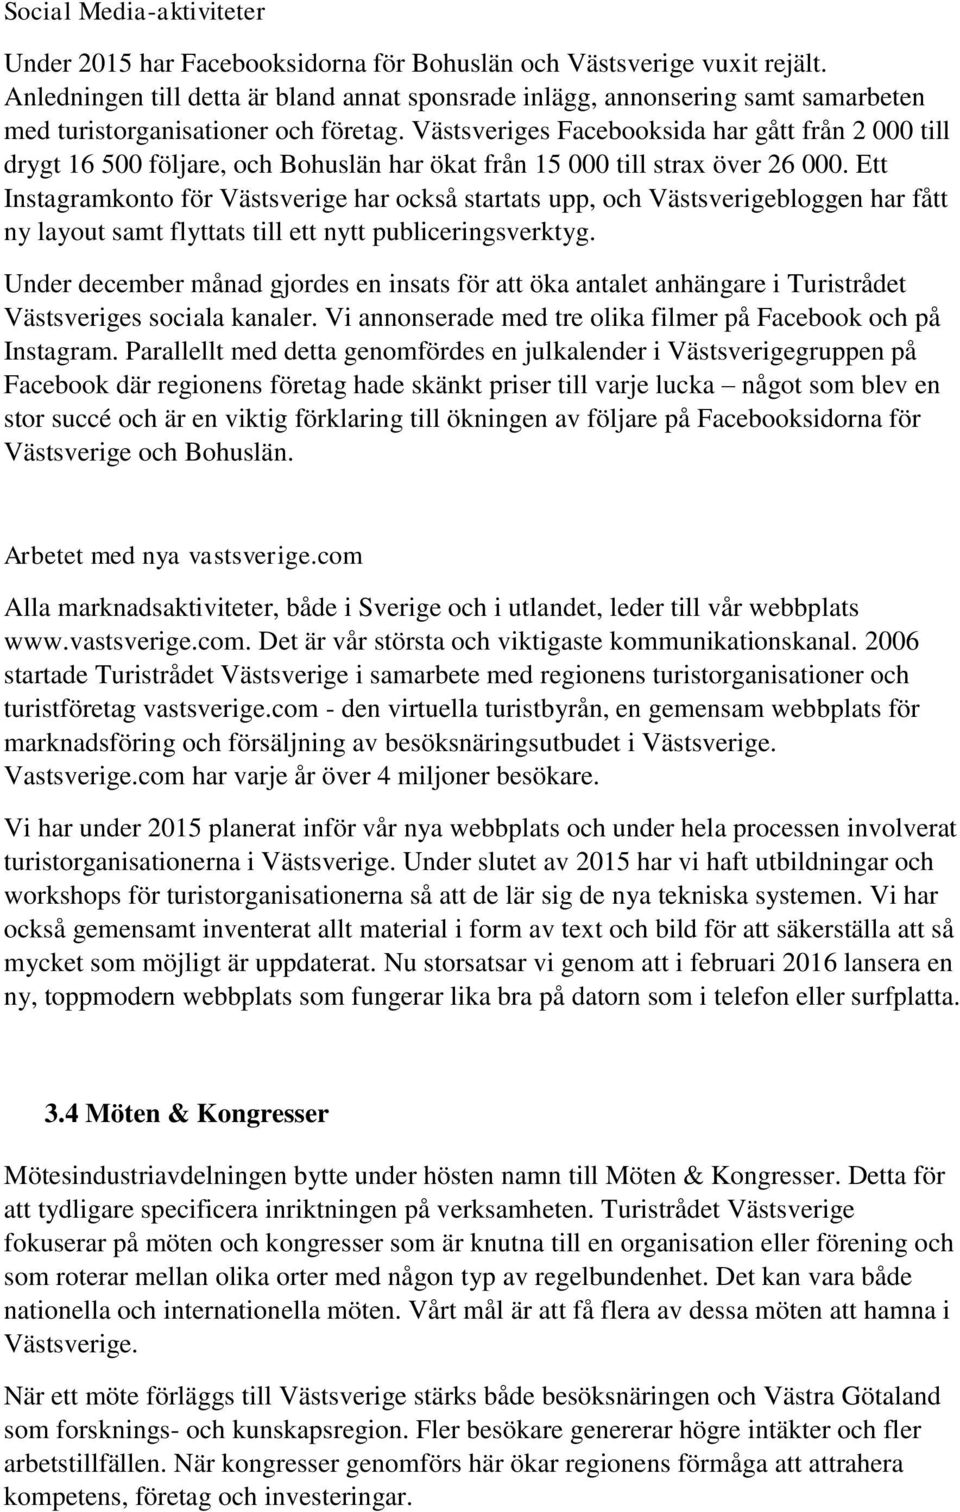 Västsveriges Facebooksida har gått från 2 000 till drygt 16 500 följare, och Bohuslän har ökat från 15 000 till strax över 26 000.